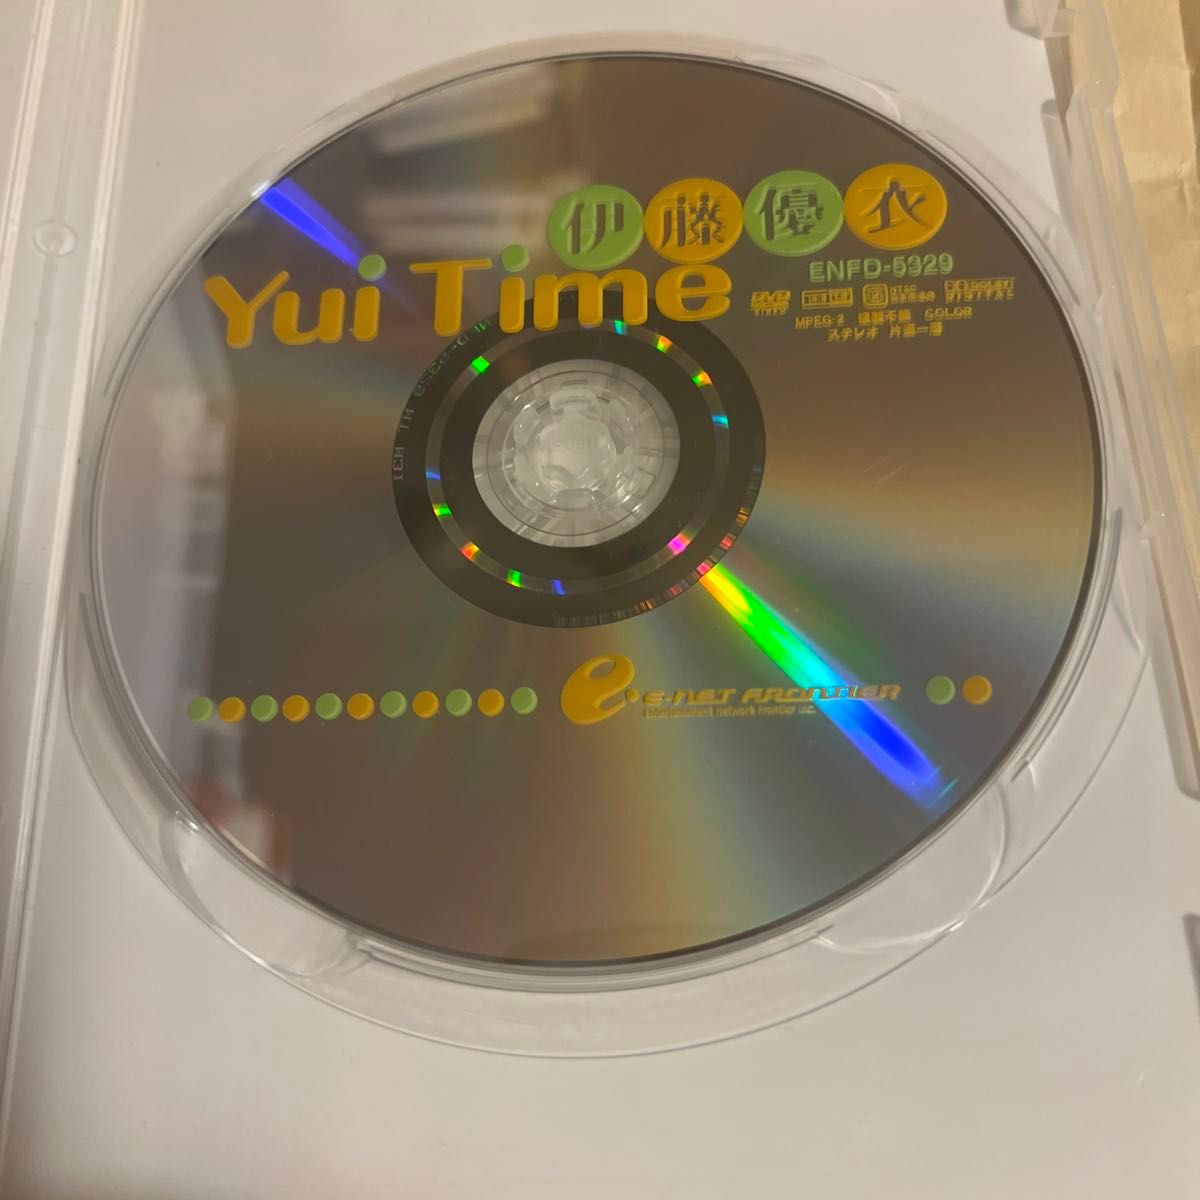 伊藤優衣 Yui Time  DVD